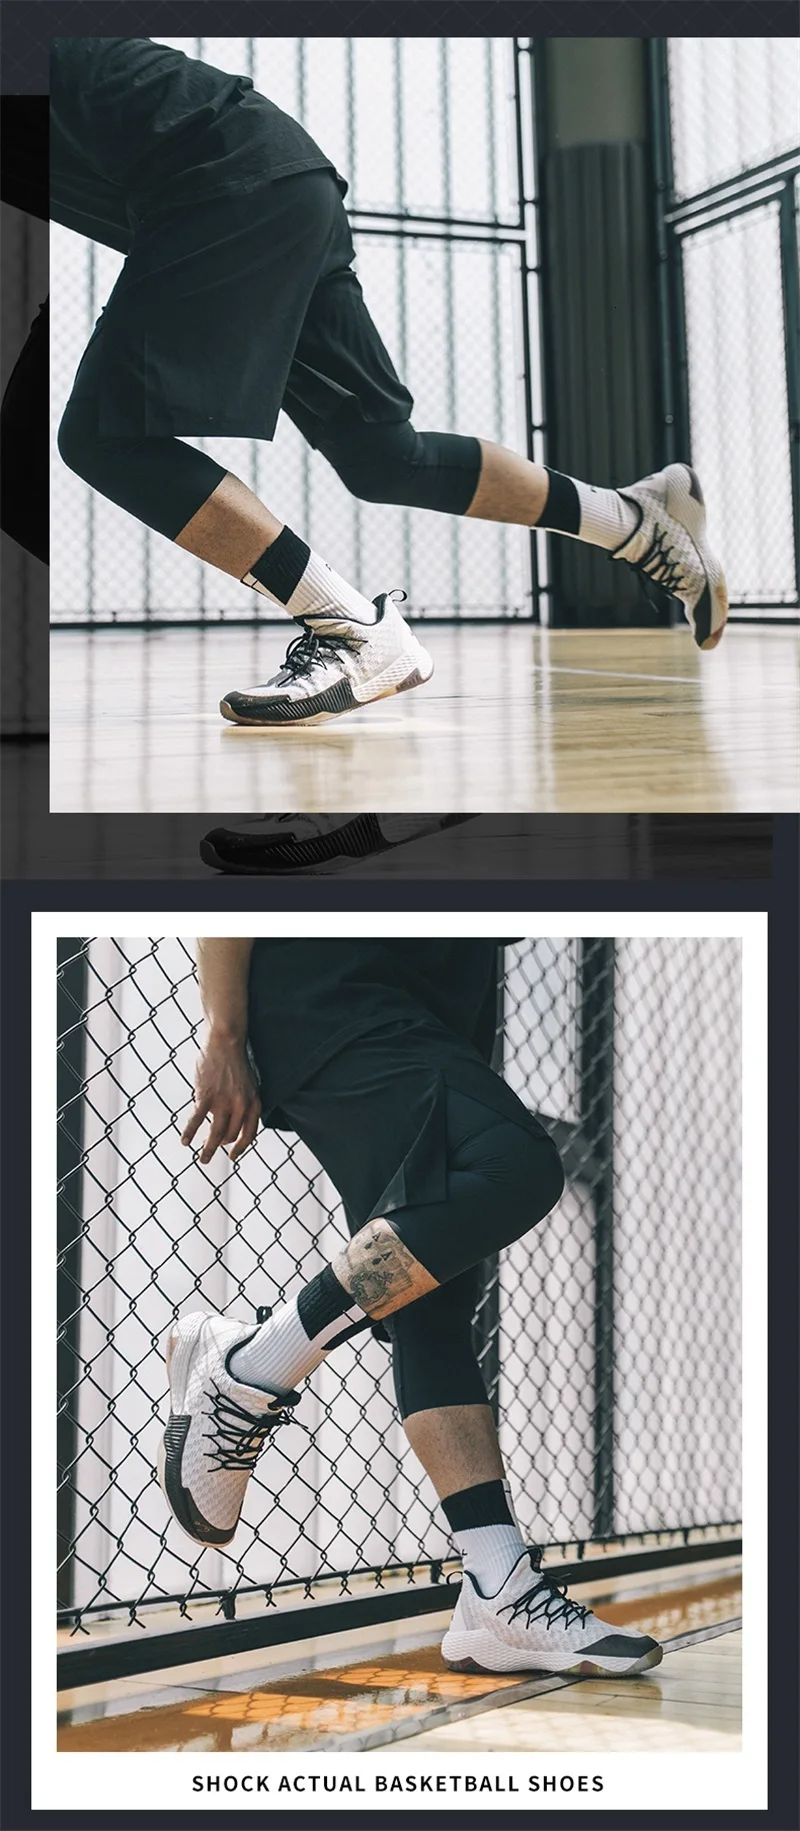 Пик, профессиональная Мужская Баскетбольная обувь, Лу Вильямс, спортивный дизайн, амортизация, функция отскока, Баскетбольная обувь